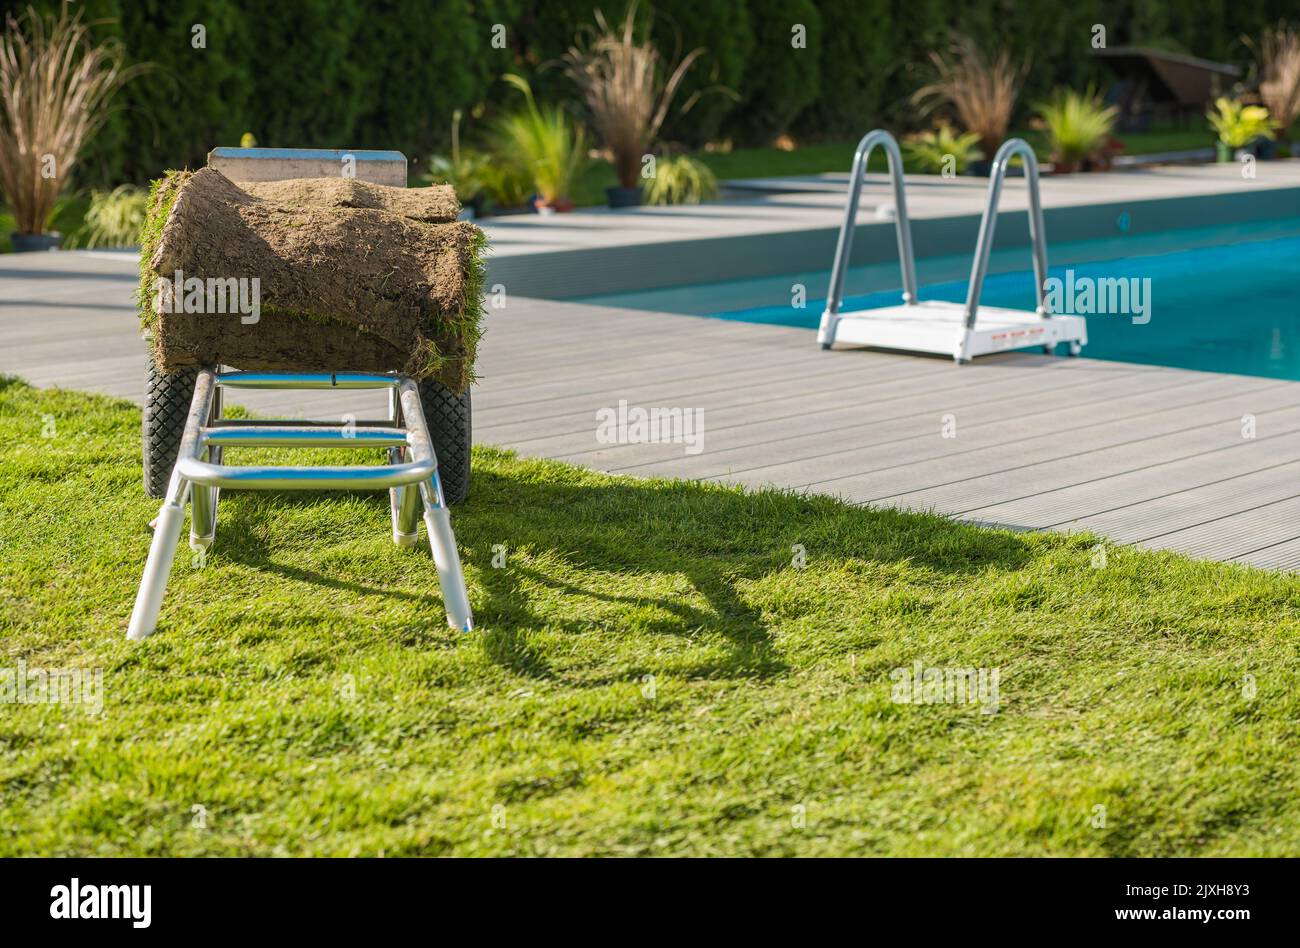 Installazione di erba naturale a bordo piscina. Cart con turfs freschi che soggiornano accanto alla piscina. Lavoro di architettura paesaggistica. Foto Stock